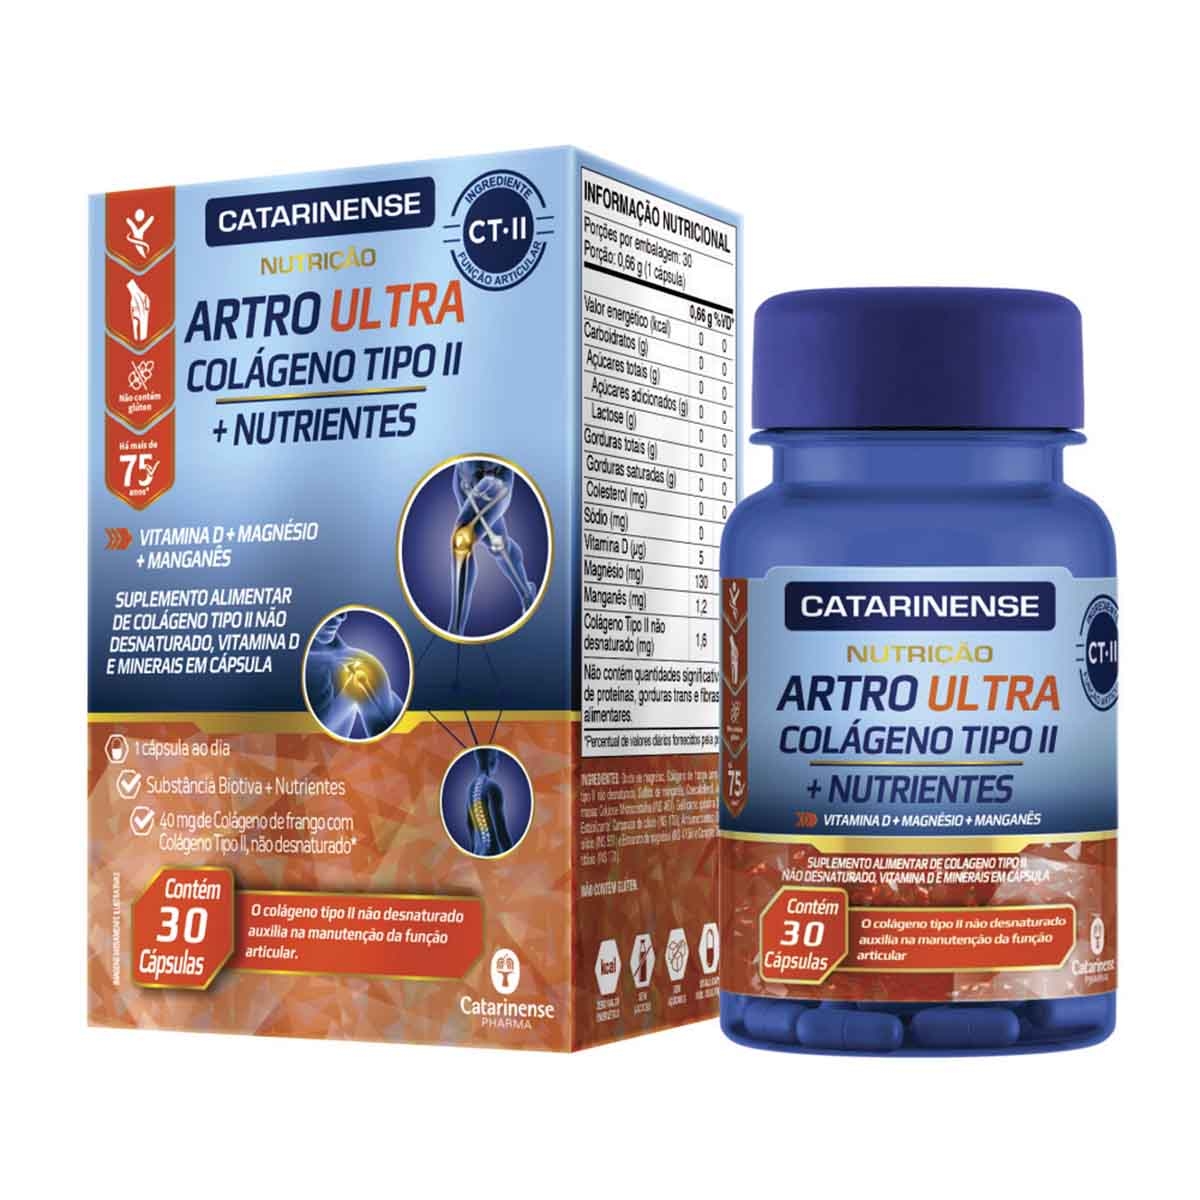 Artro Ultra Colágeno Tipo II + Nutrientes 90 Capsulas